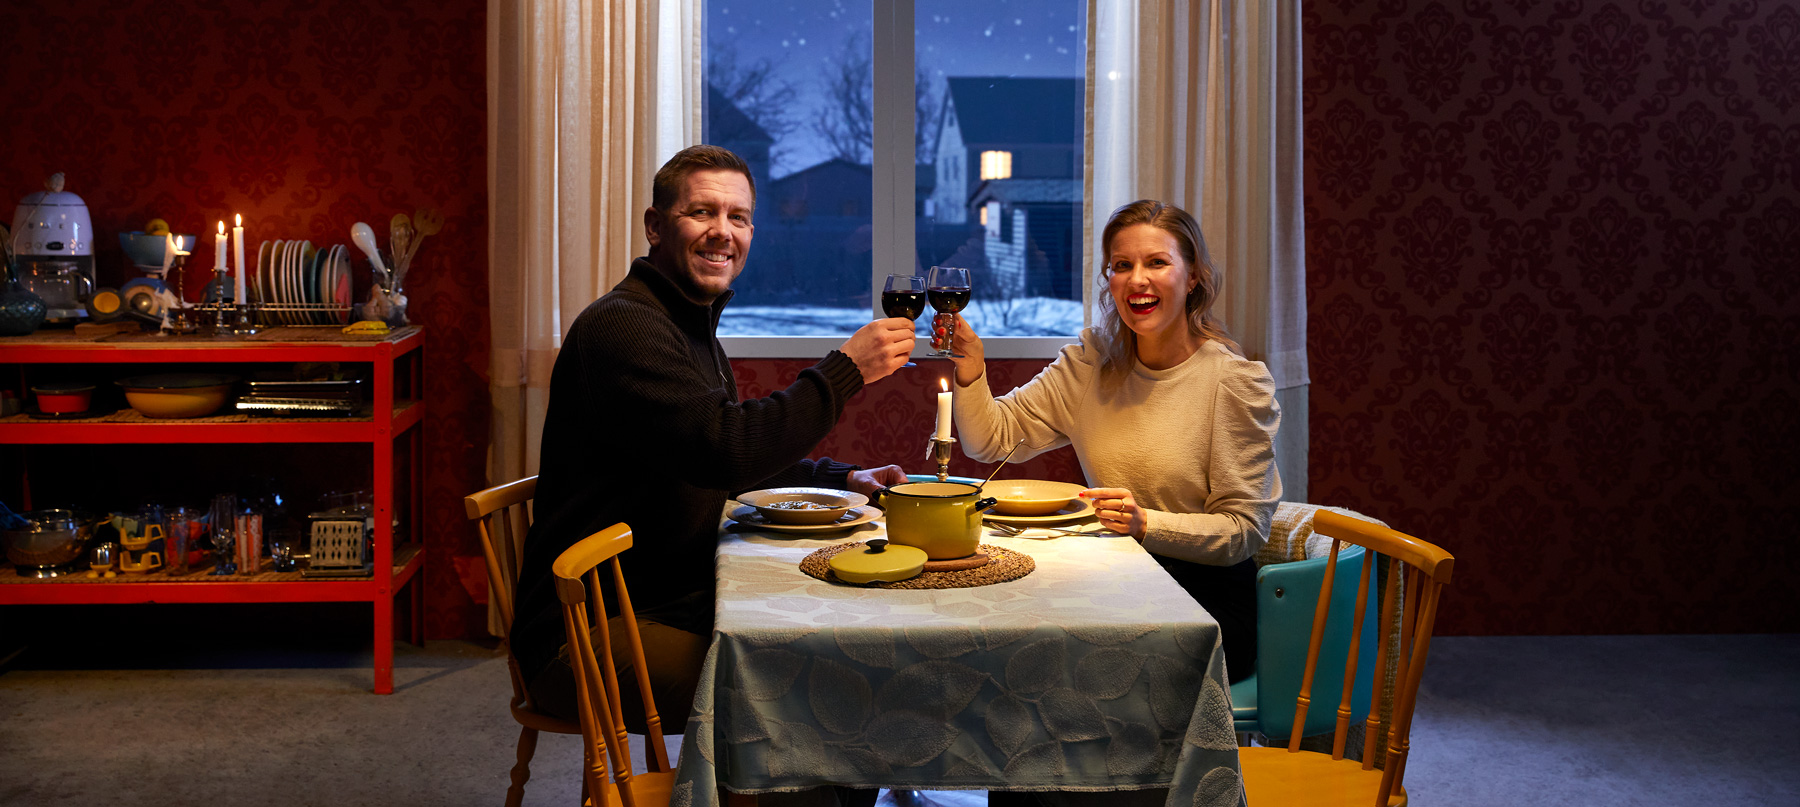 Mies ja nainen ruokapöydän äärellä viettämässä vuosipäivää. Molemmat kohottavat maljaa ja katsovat kameraan.